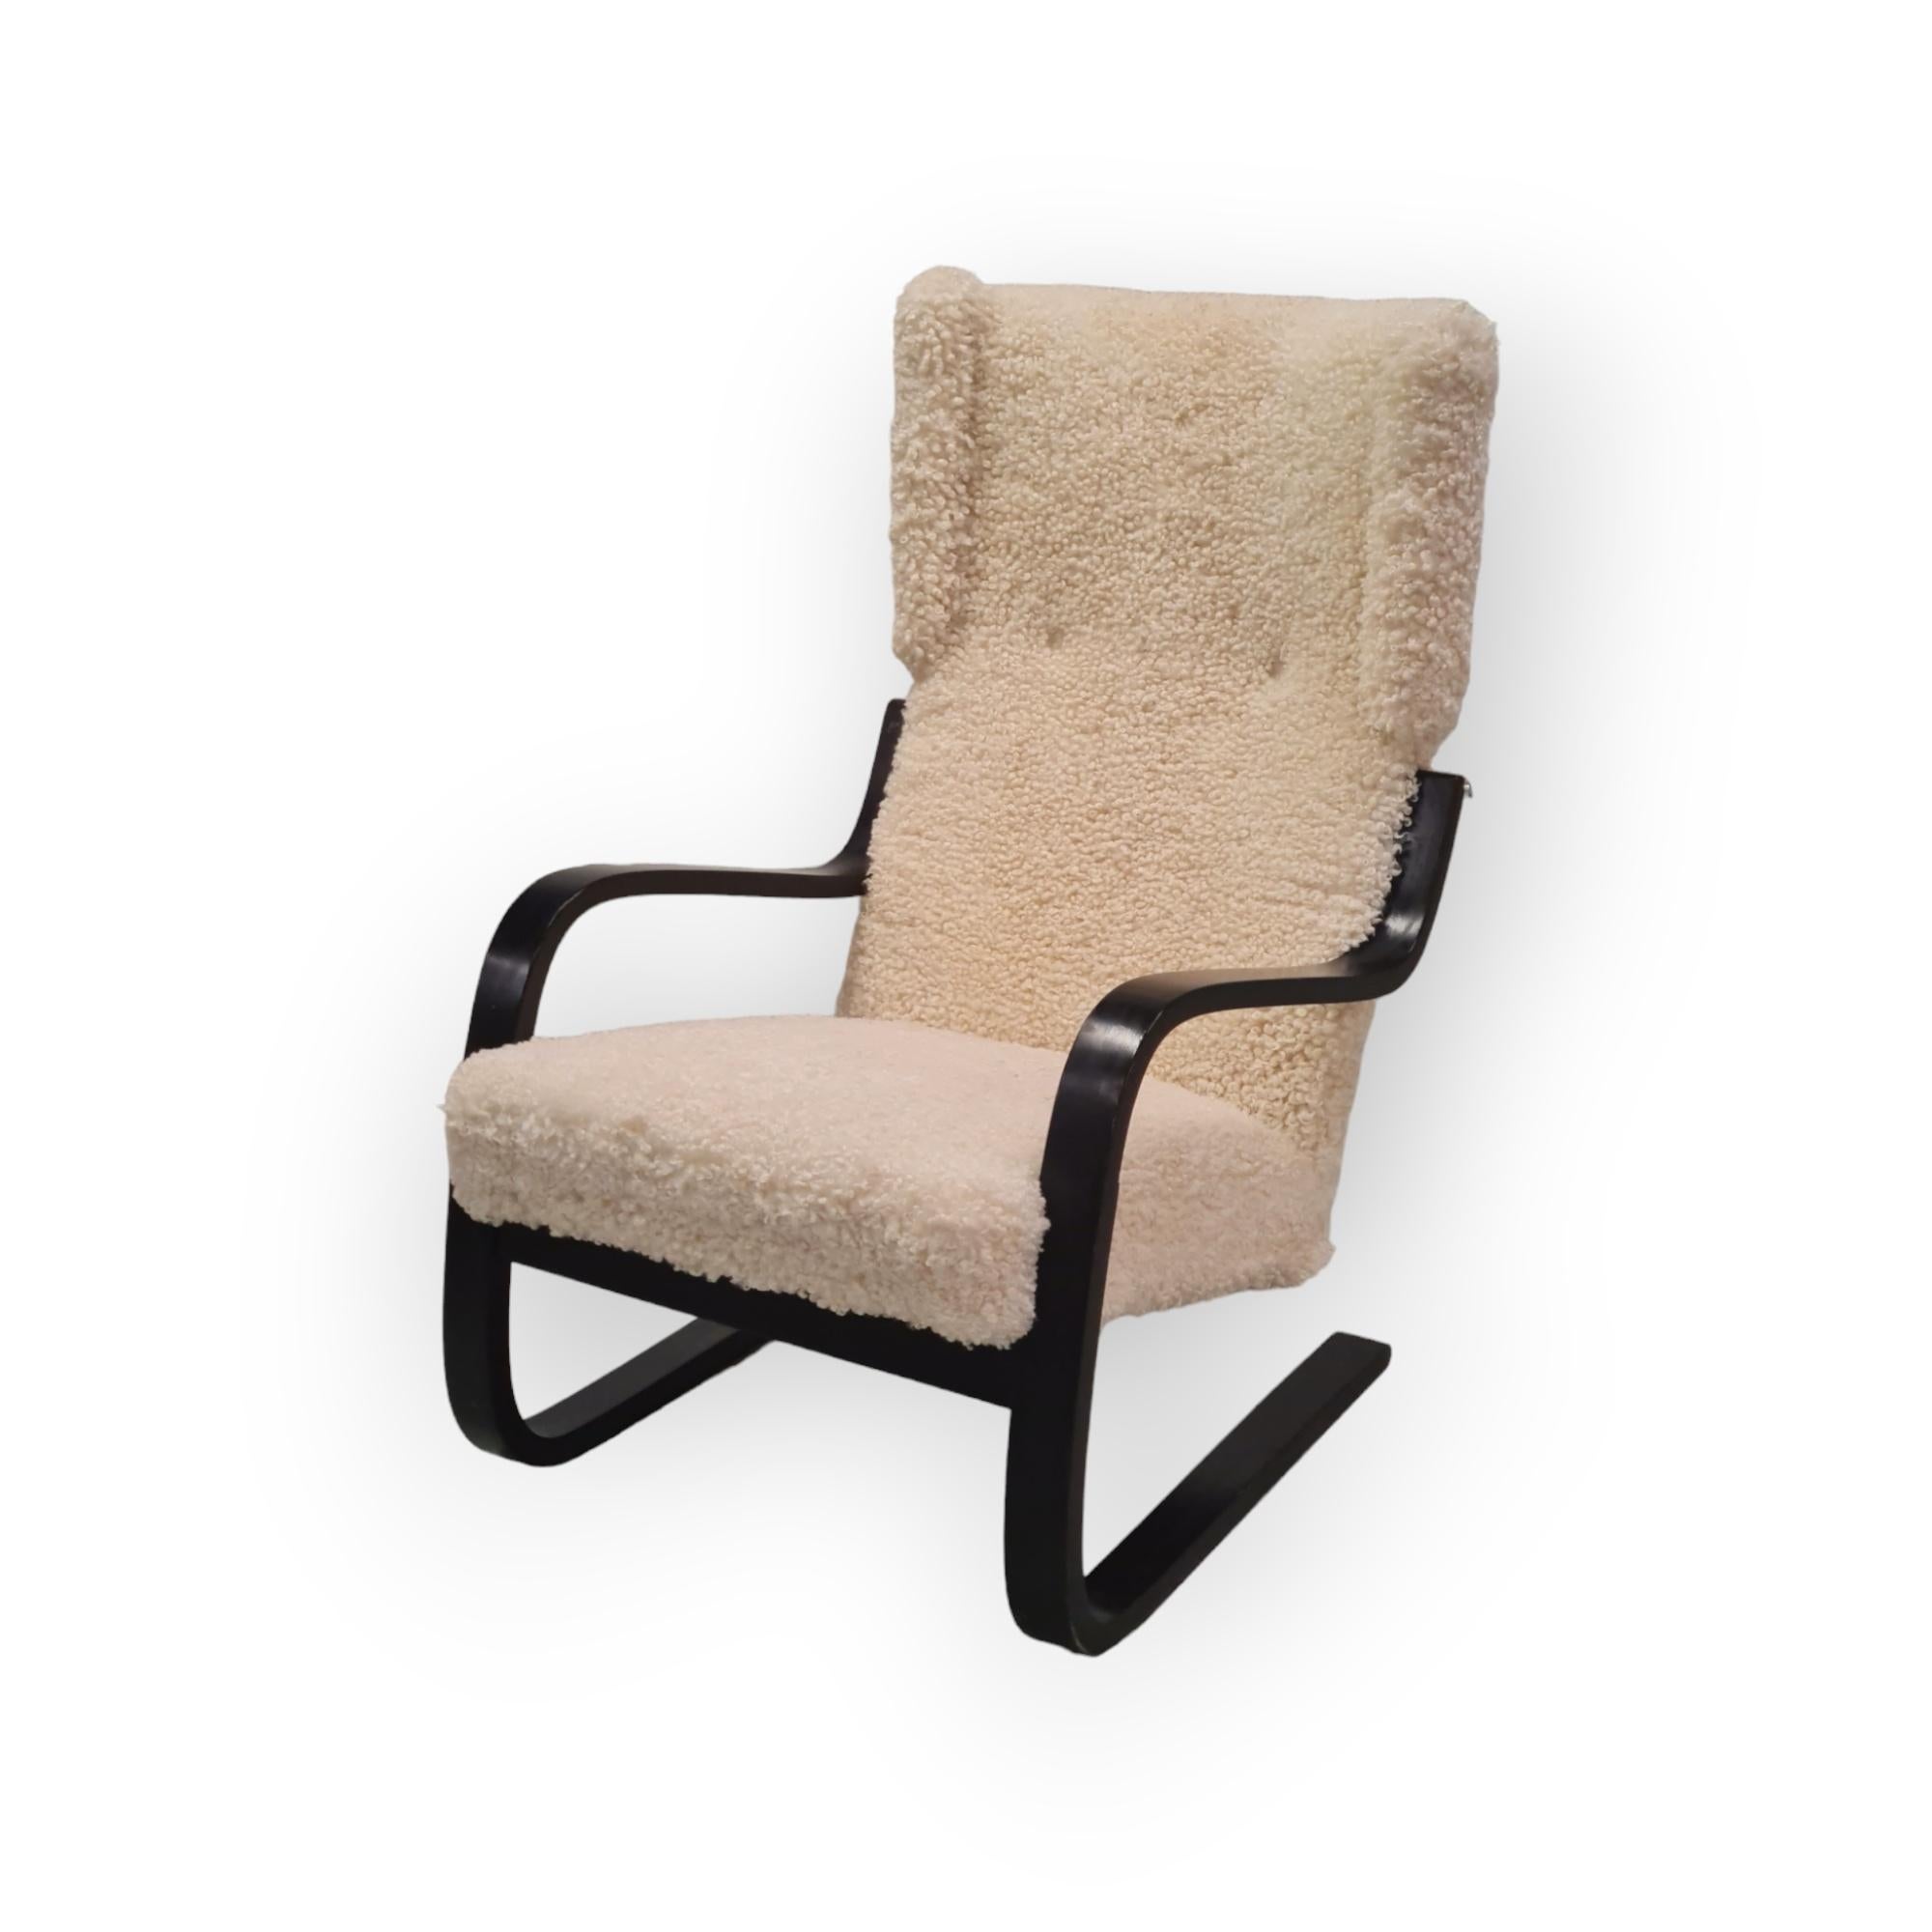 Une belle et ancienne version de l'emblématique fauteuil Aalto modèle 401 qui a été conçu pour la première fois en 1933. La chaise 401 faisait partie de l'emblématique sanatorium de Paimio, qui a propulsé le nom d'Aalto au rang de star de